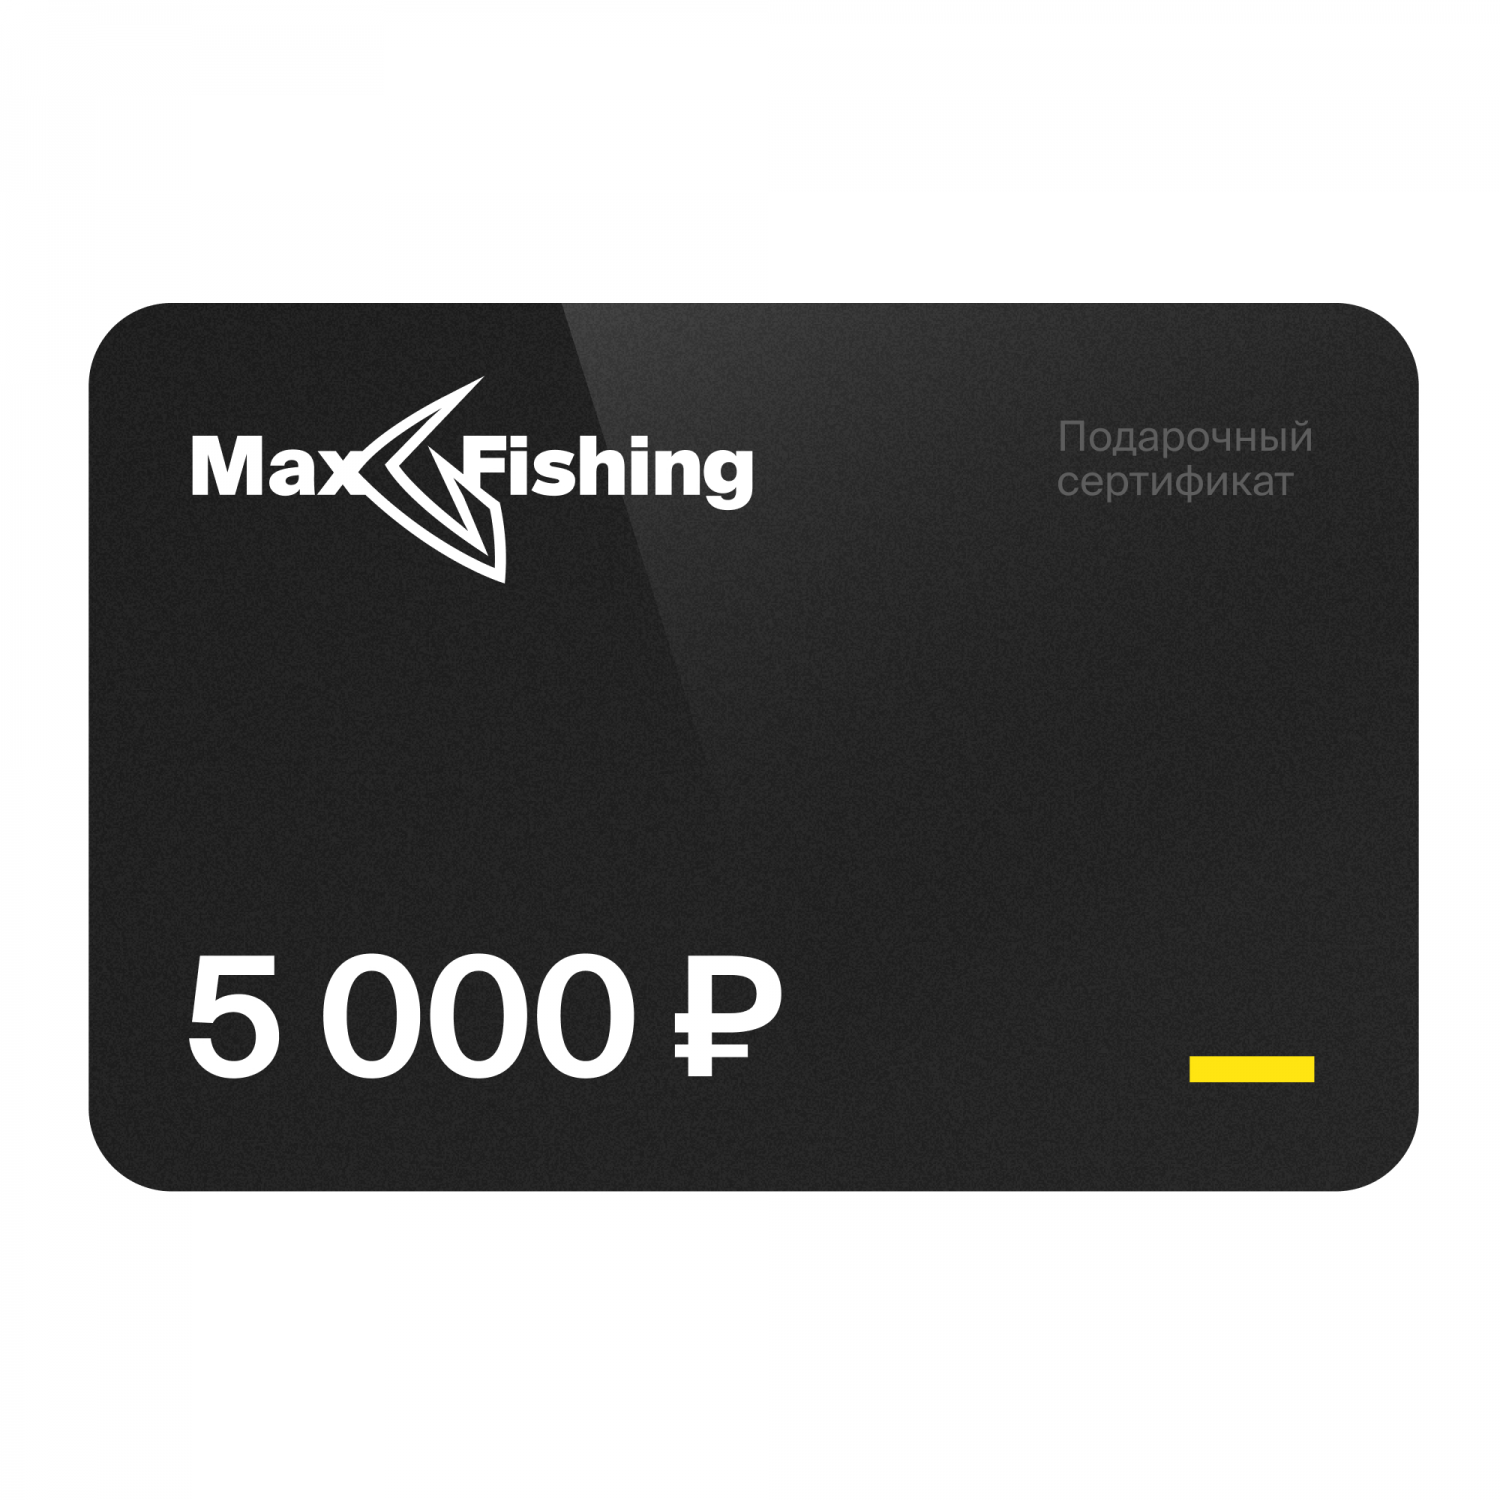 Подарочный сертификат MaxFishing 5 000 ₽ подарочный сертификат на 10 000 рублей